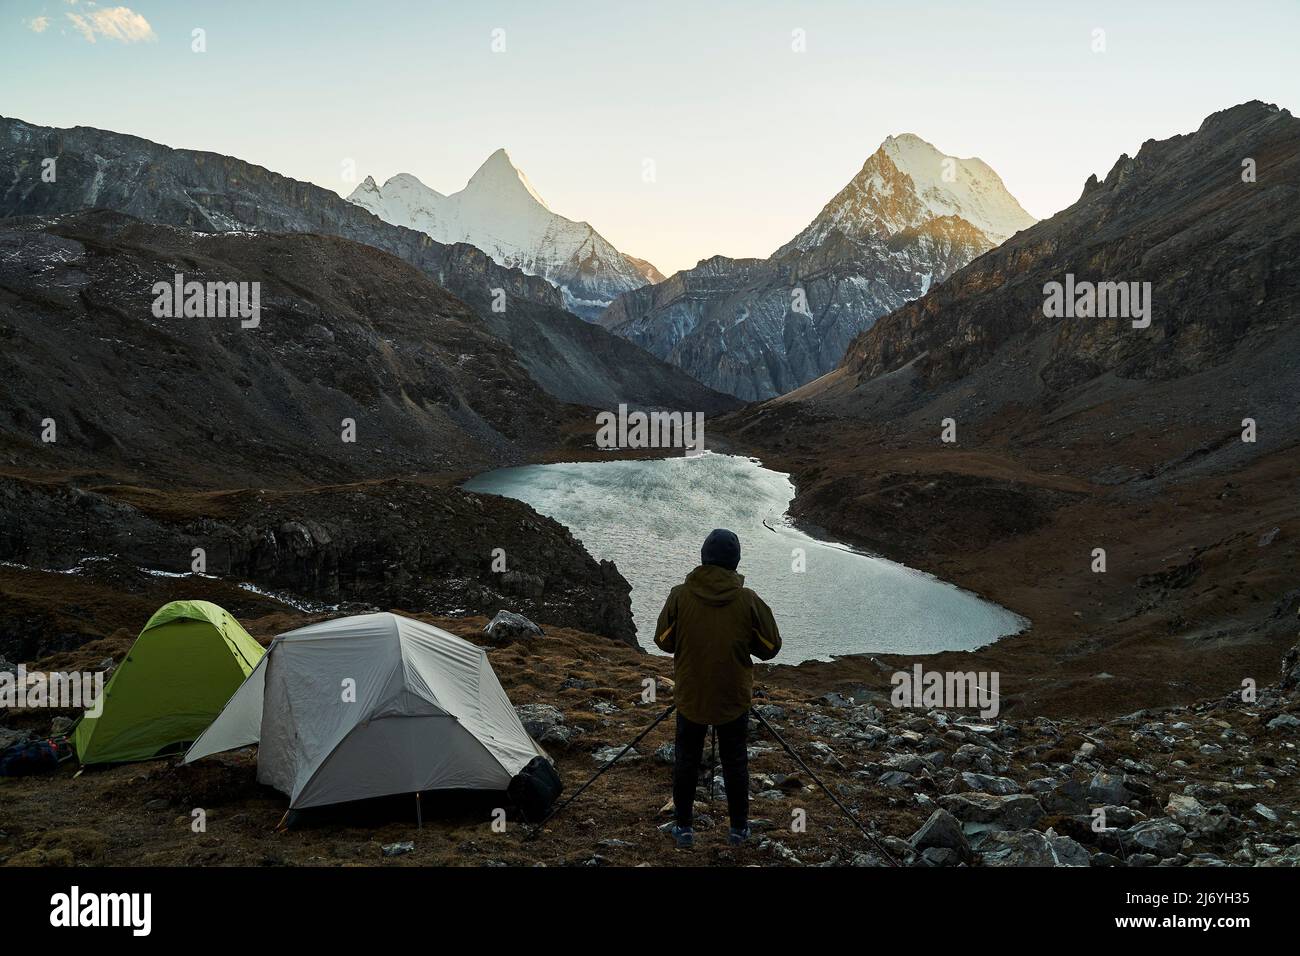 asiatischer Camper-Fotograf, der ein Bild von Berg und See im yading-Nationalpark, Bezirk daocheng, Provinz sichuan, china, macht Stockfoto